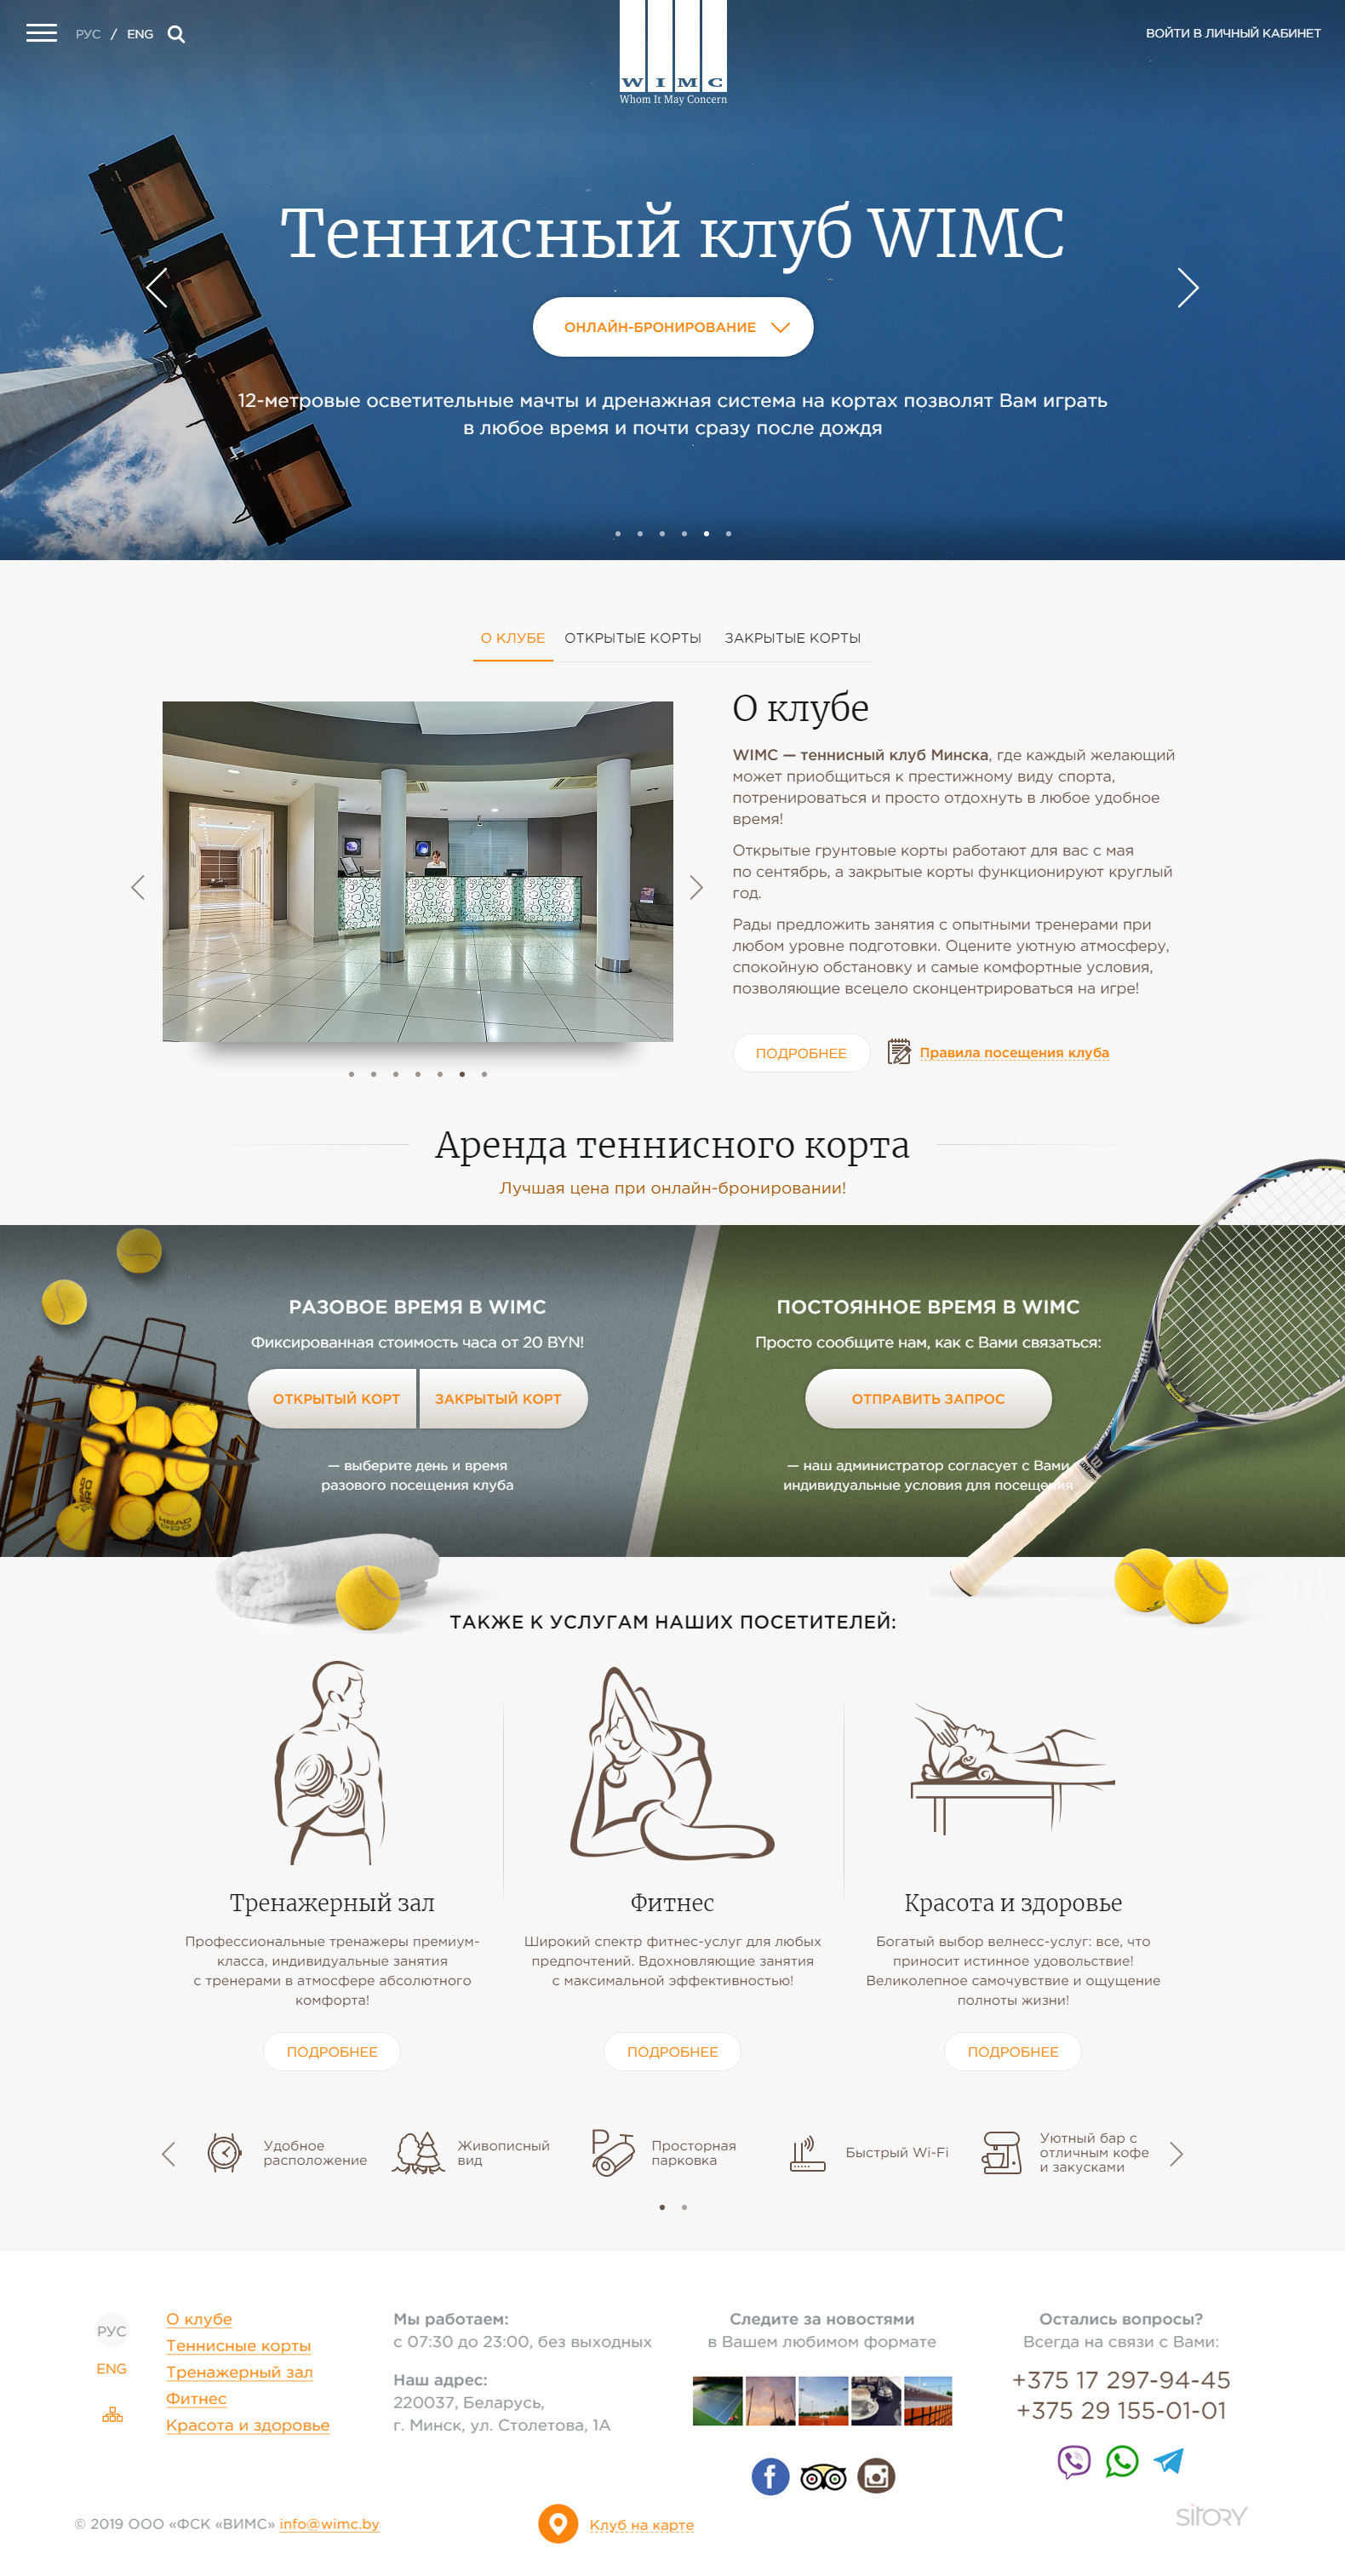 сайт теннисного клуба с сервисом онлайн-бронирования